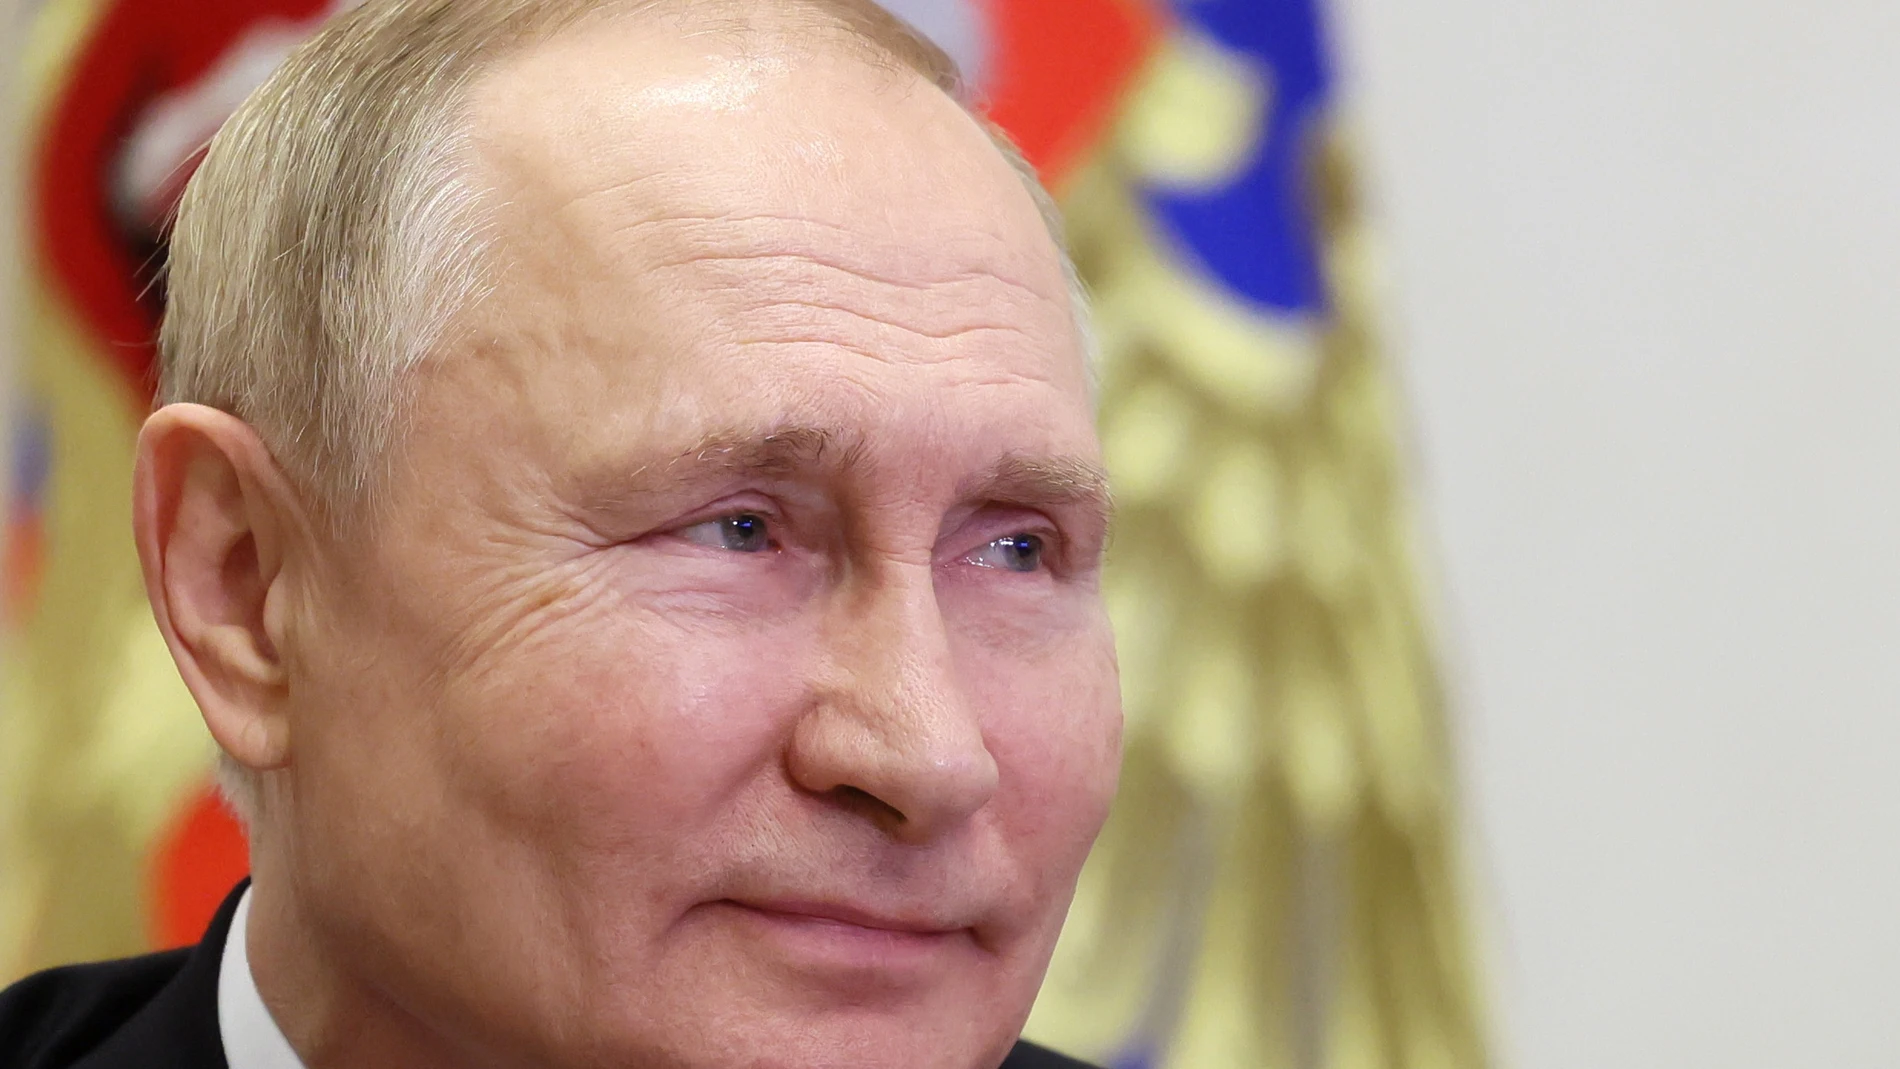 El presidente de RUsia, Vladimir Putin